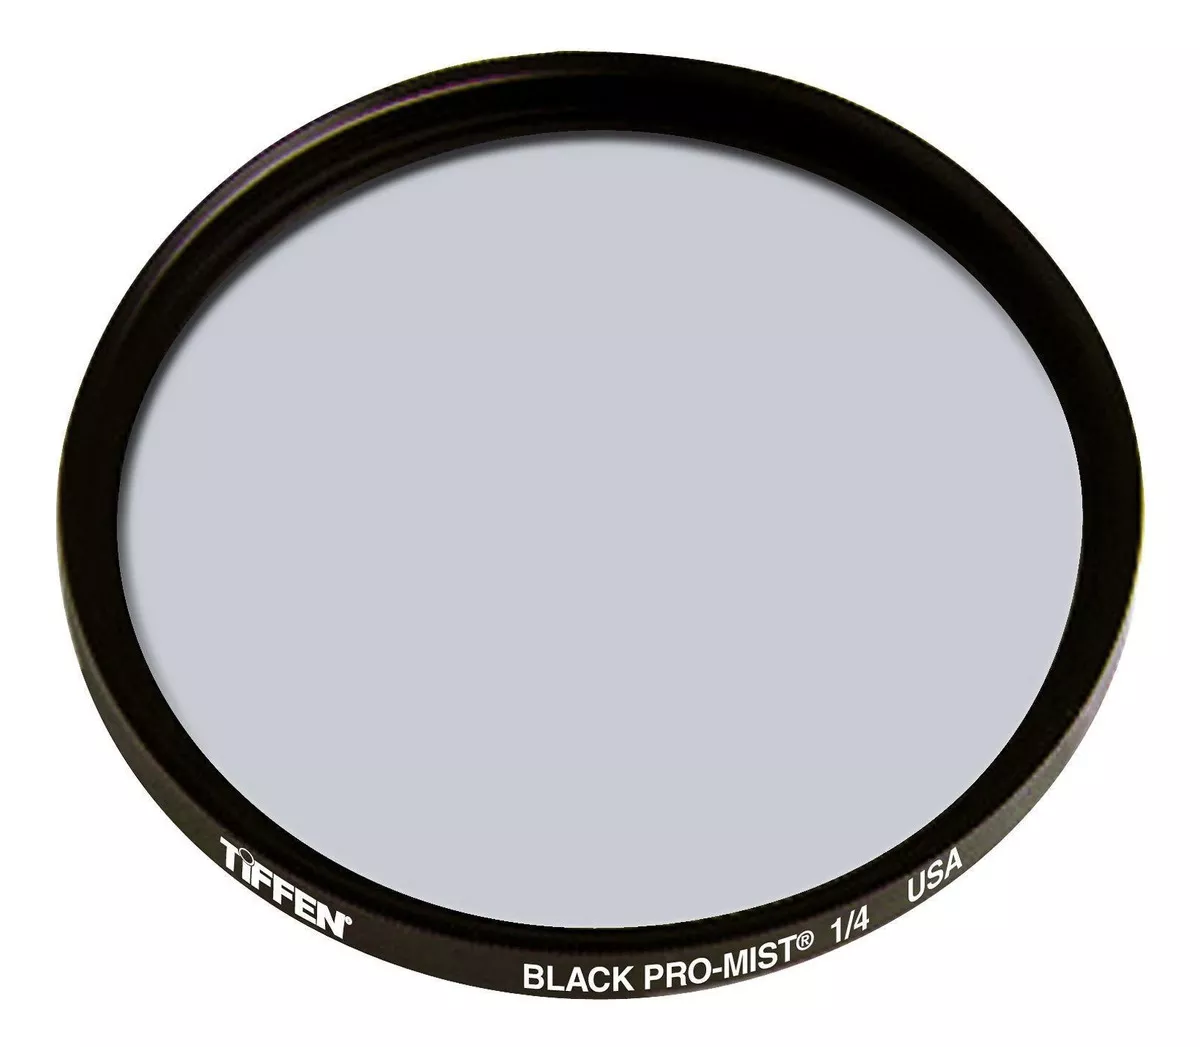 Terceira imagem para pesquisa de filtro tiffen black pro mist